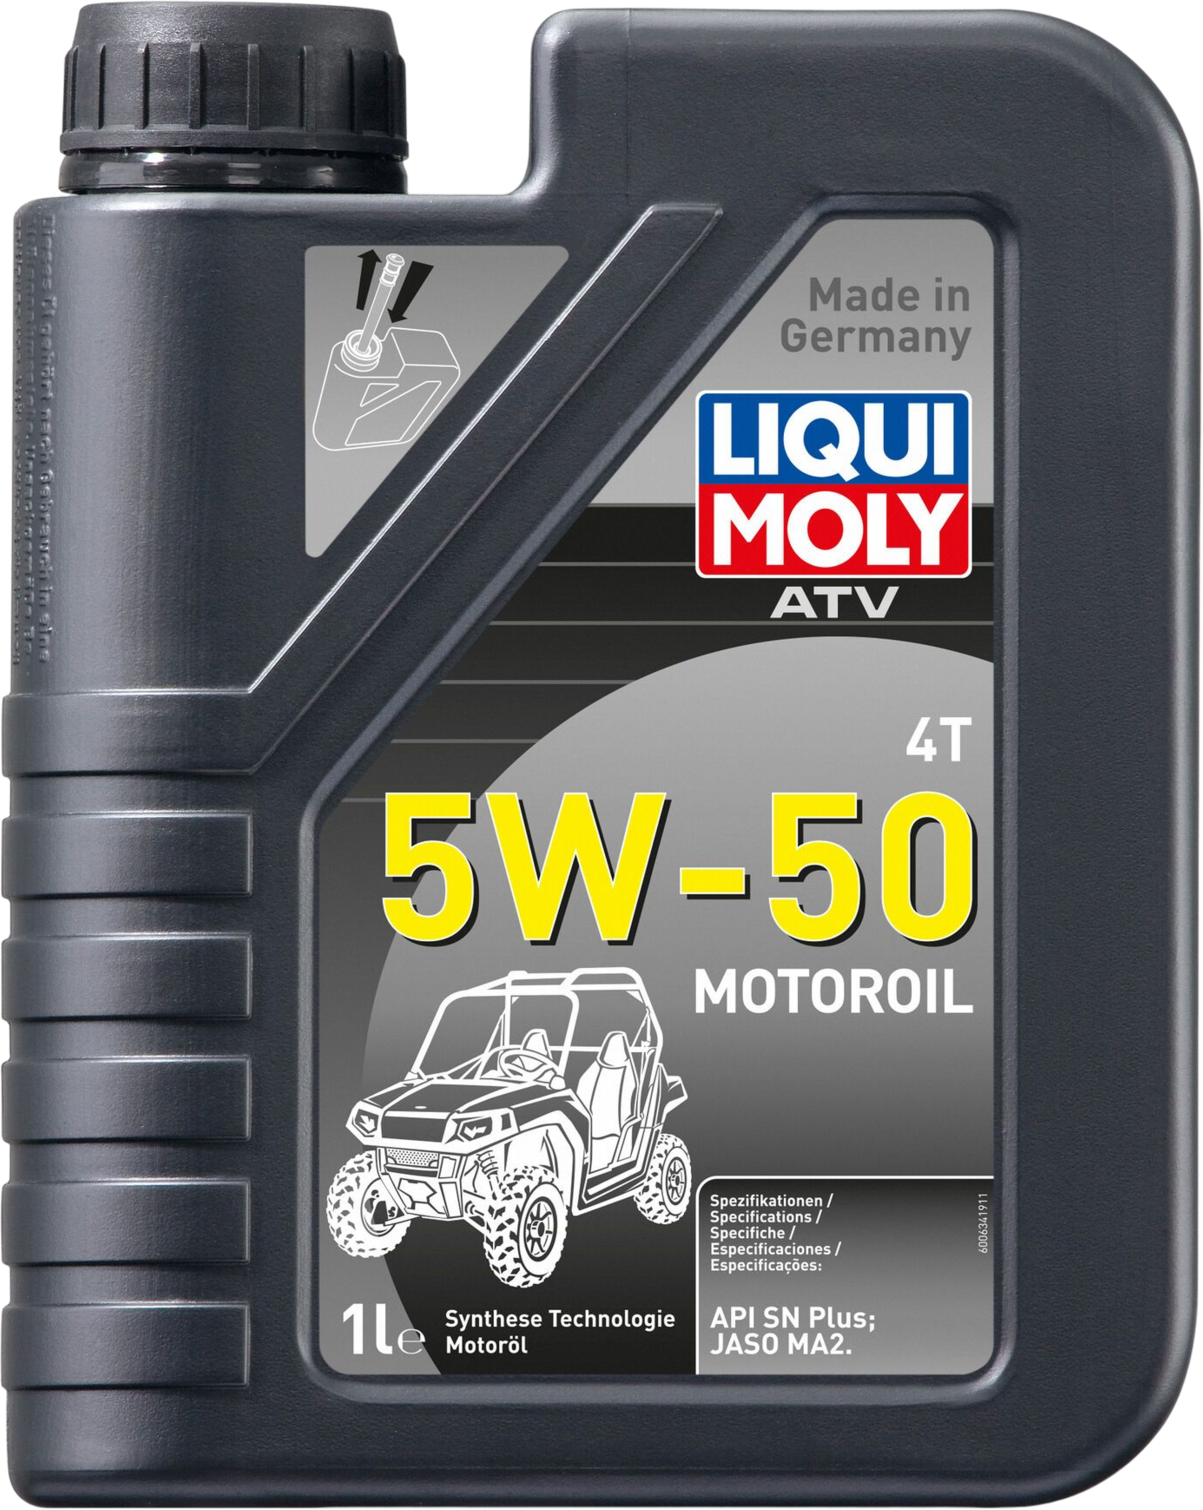 Liqui Moly ATV 4T Motoroil 5W-50,1 lt